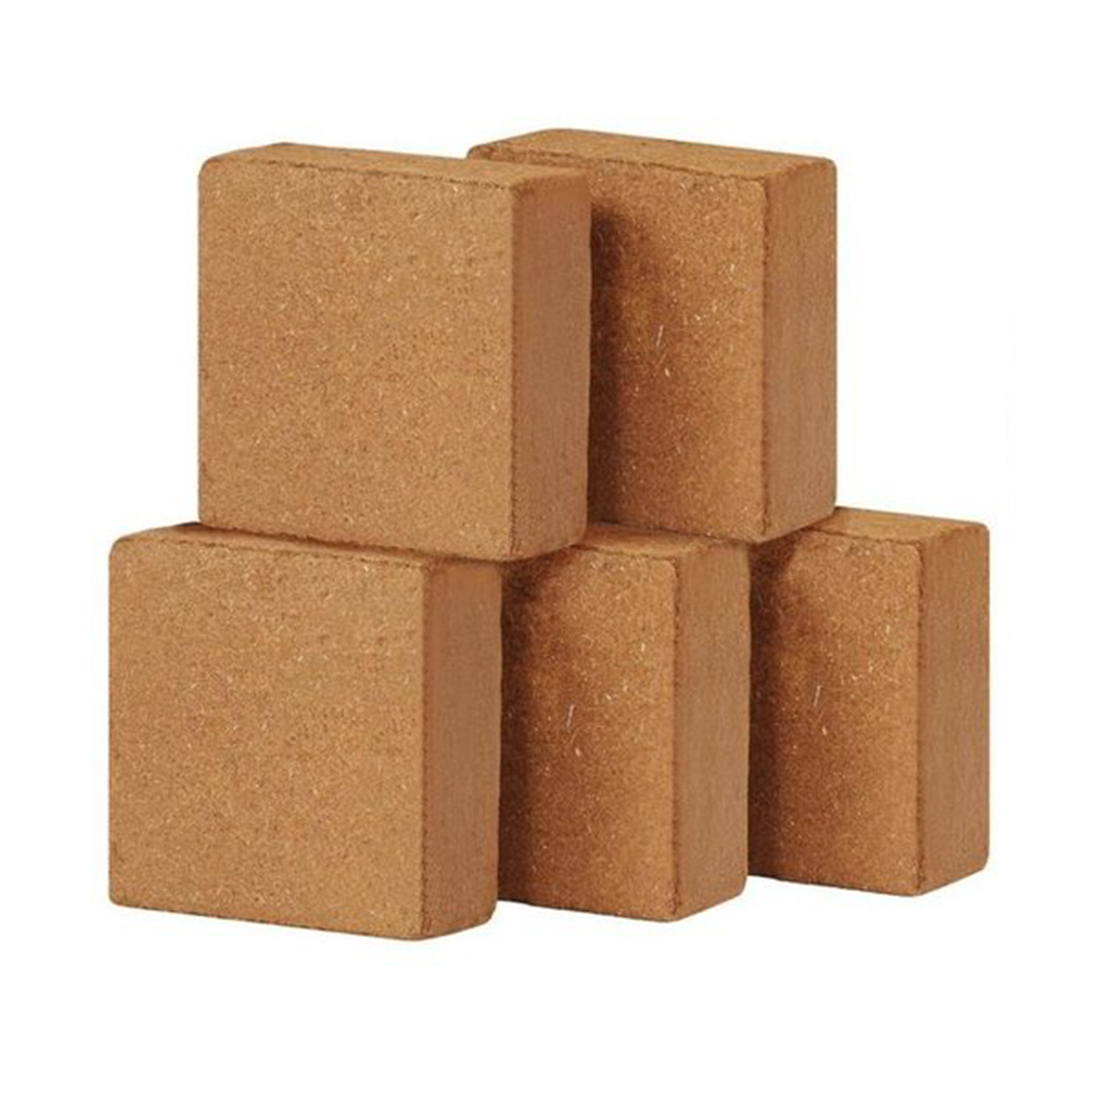 Good Quality Coconut coir bricks For Sale